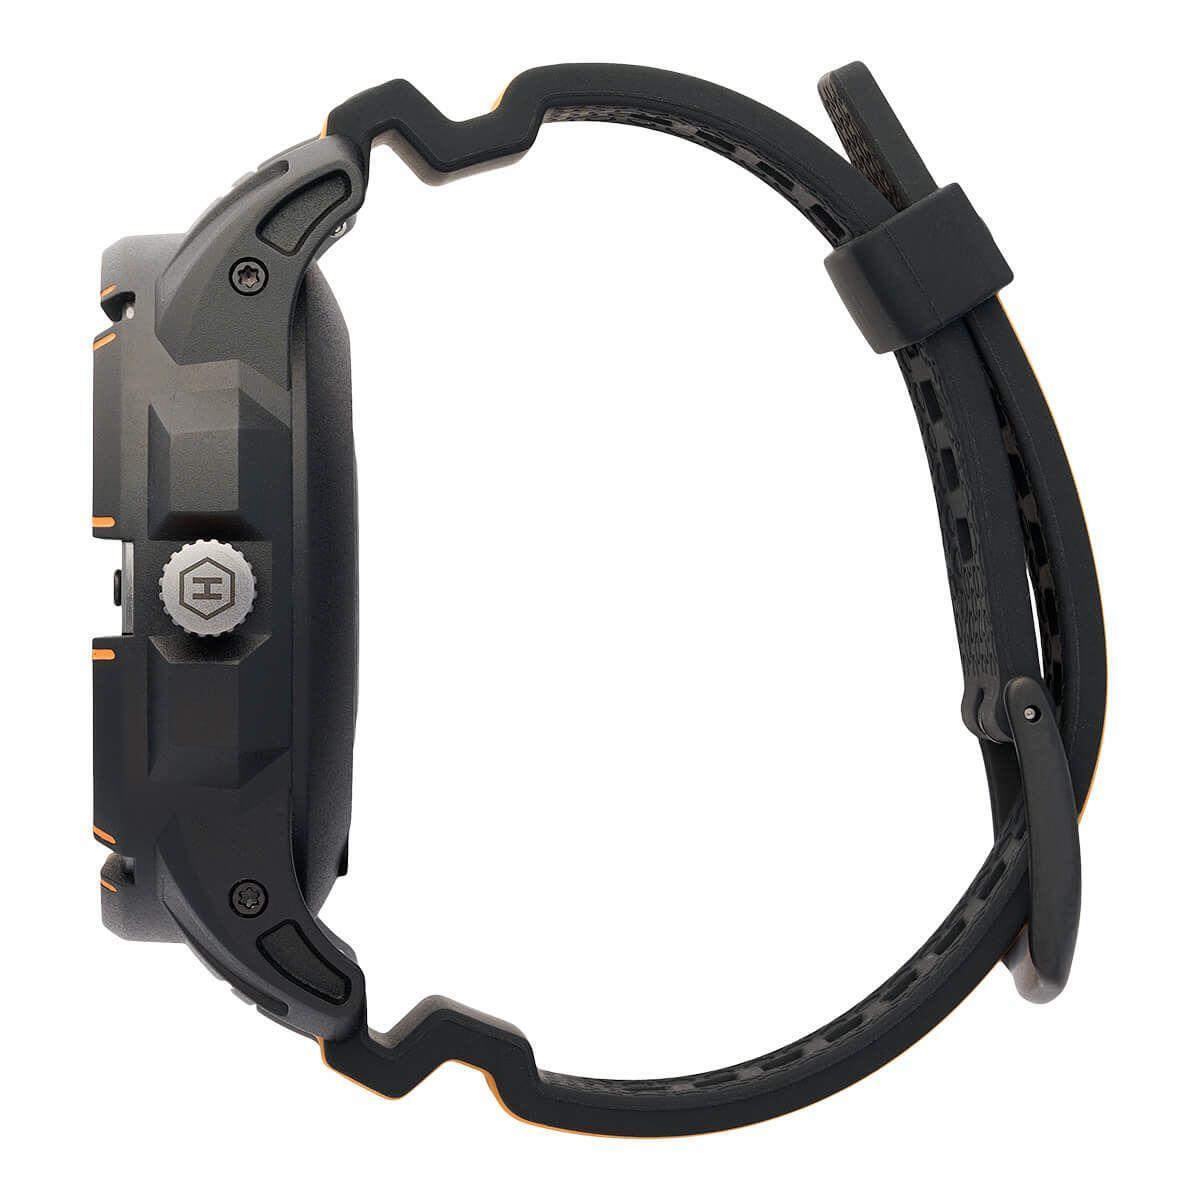 Chytré hodinky Hammer Watch Plus, GPS, čierno-oranžové